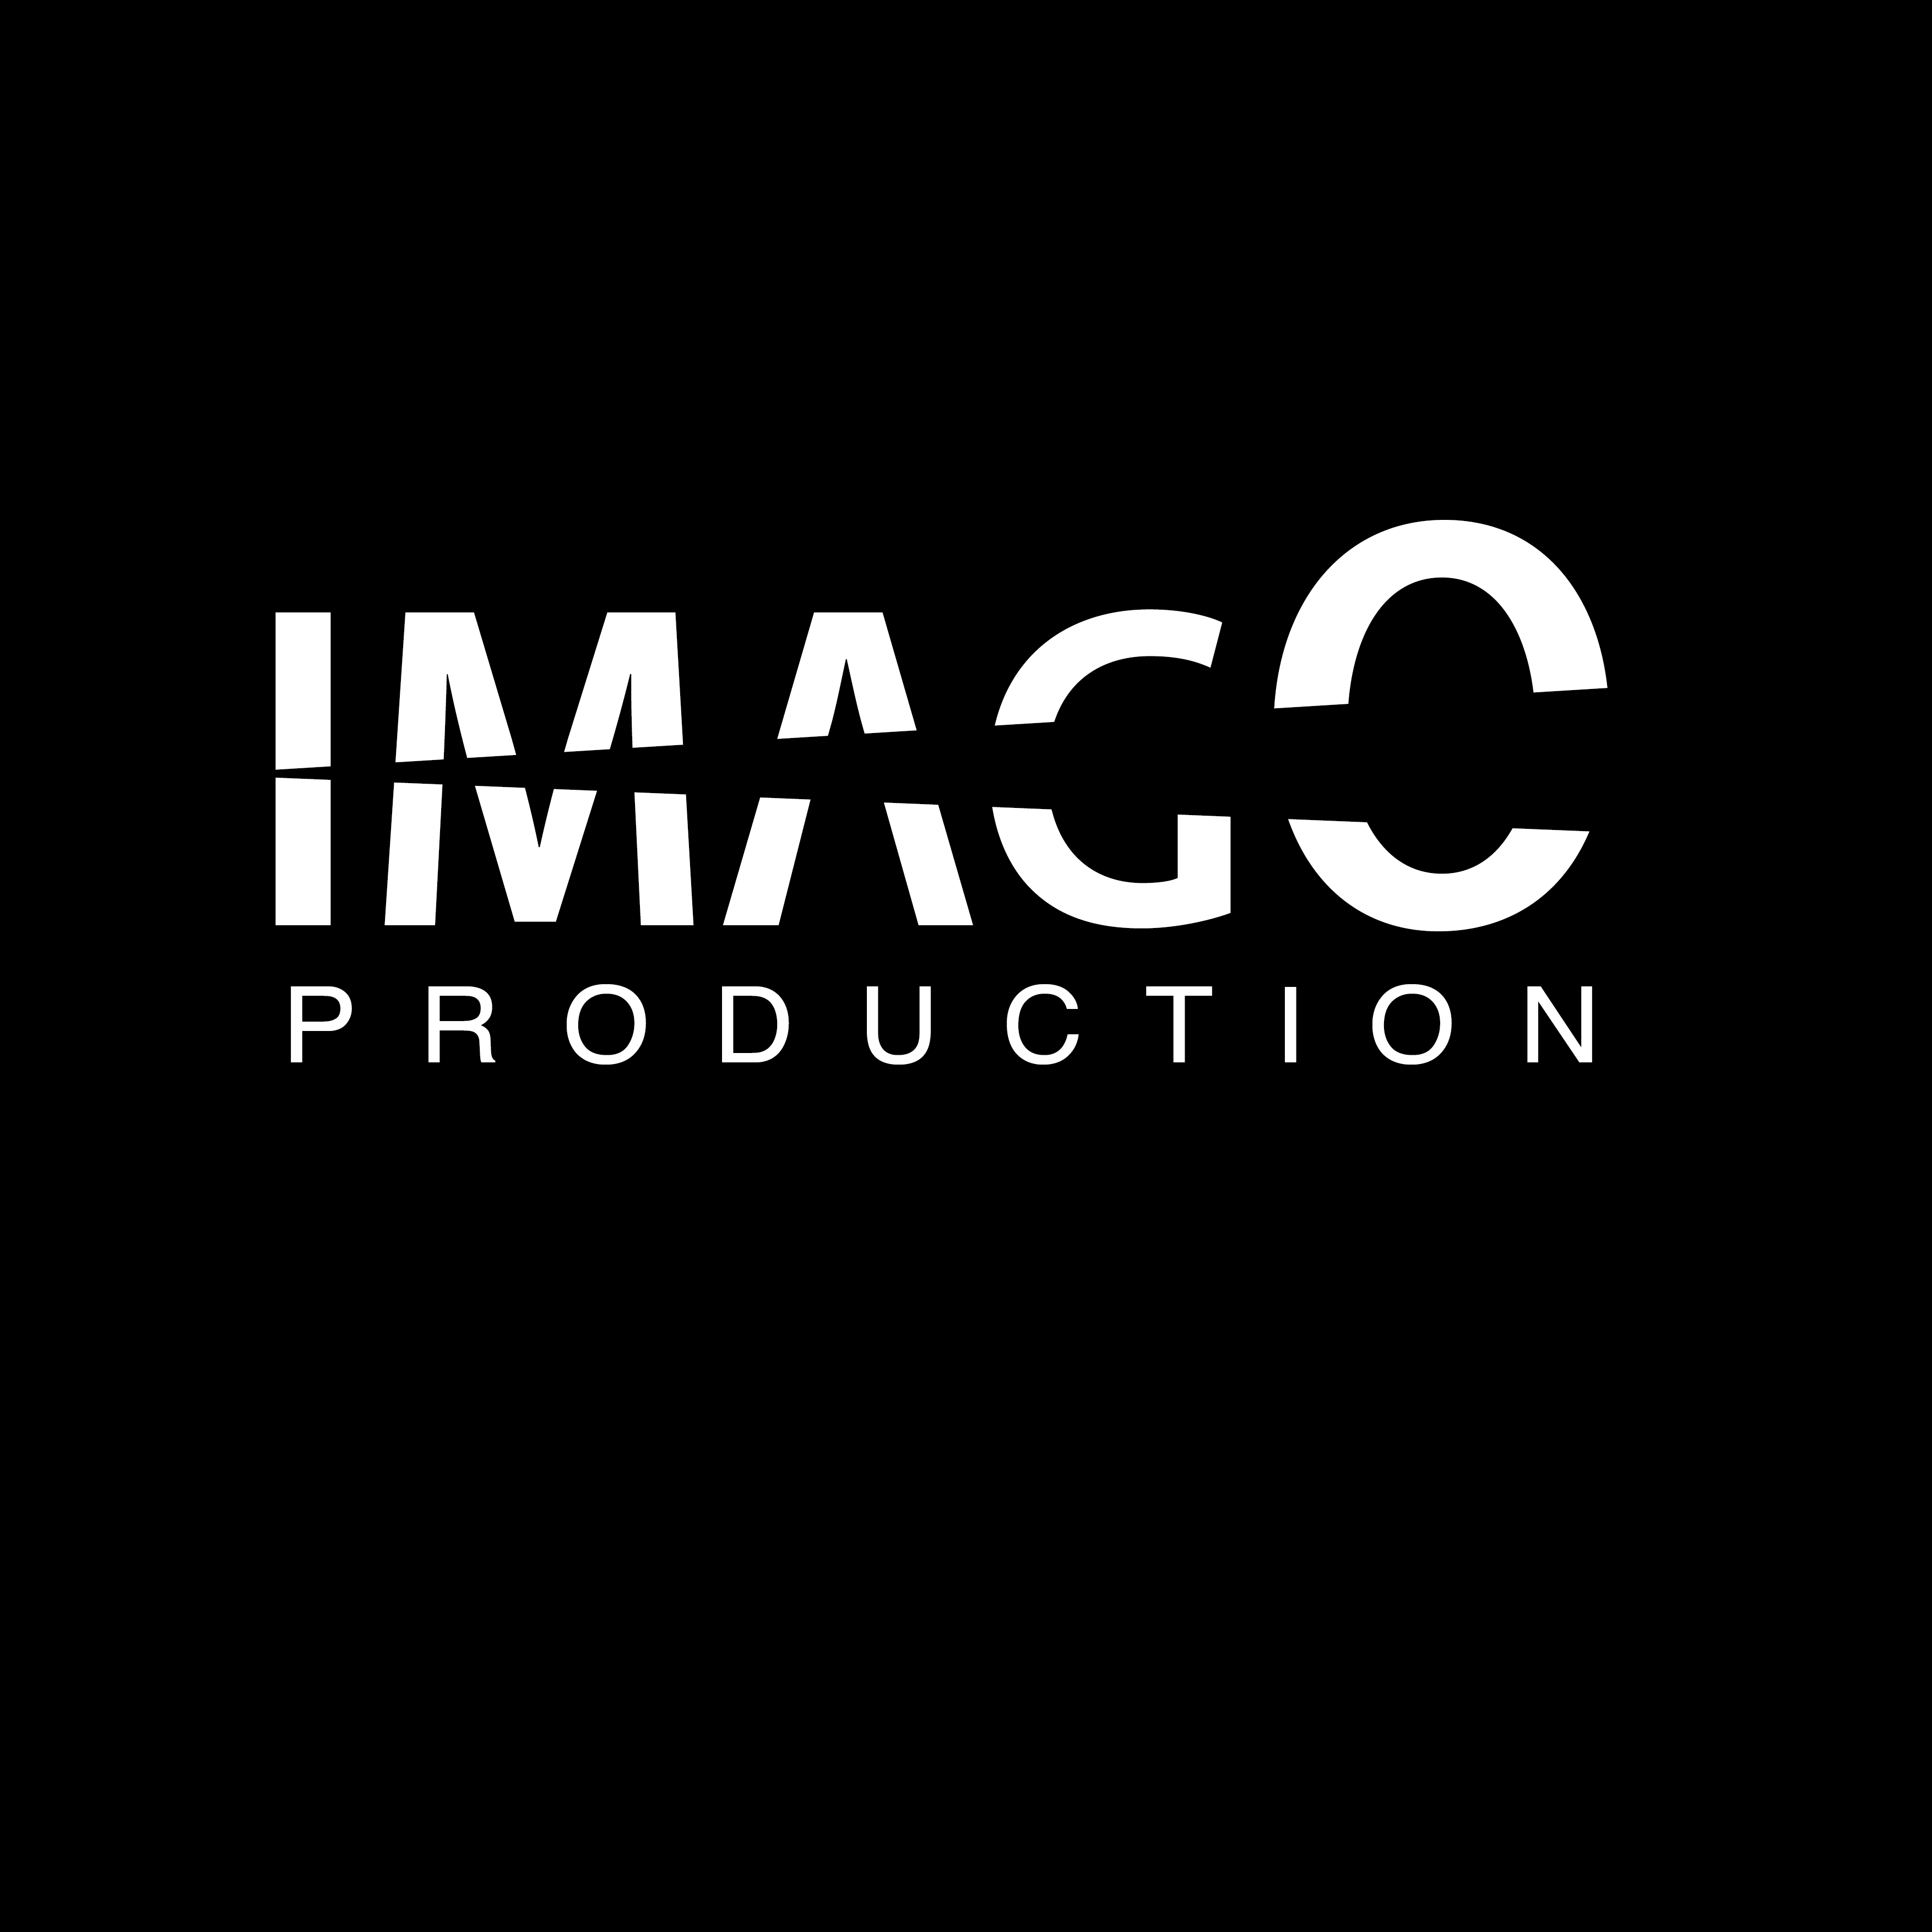 Imago production